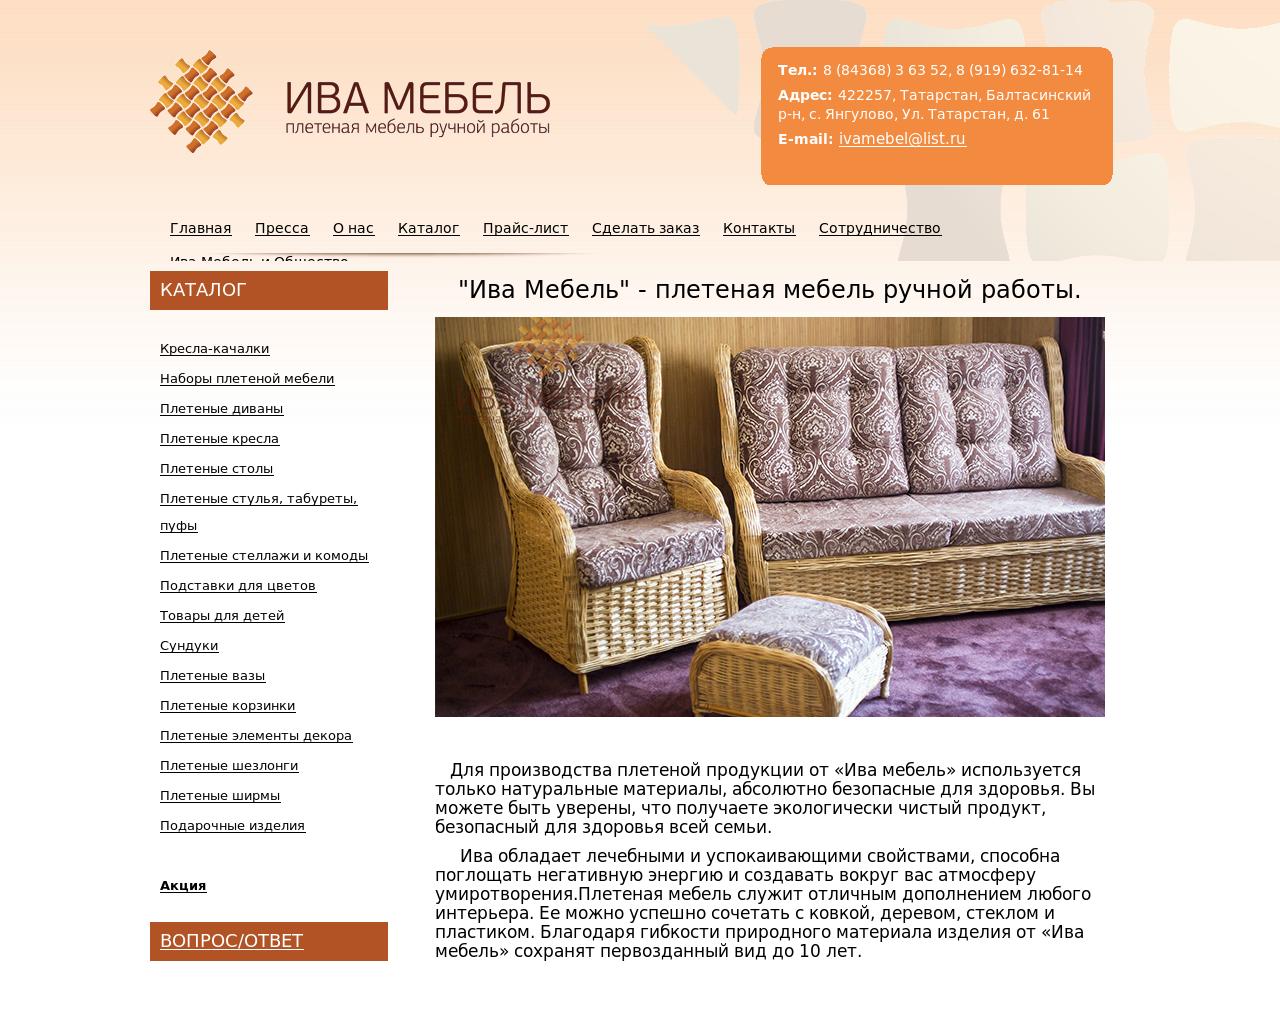 Изображение сайта ива-мебель.рф в разрешении 1280x1024